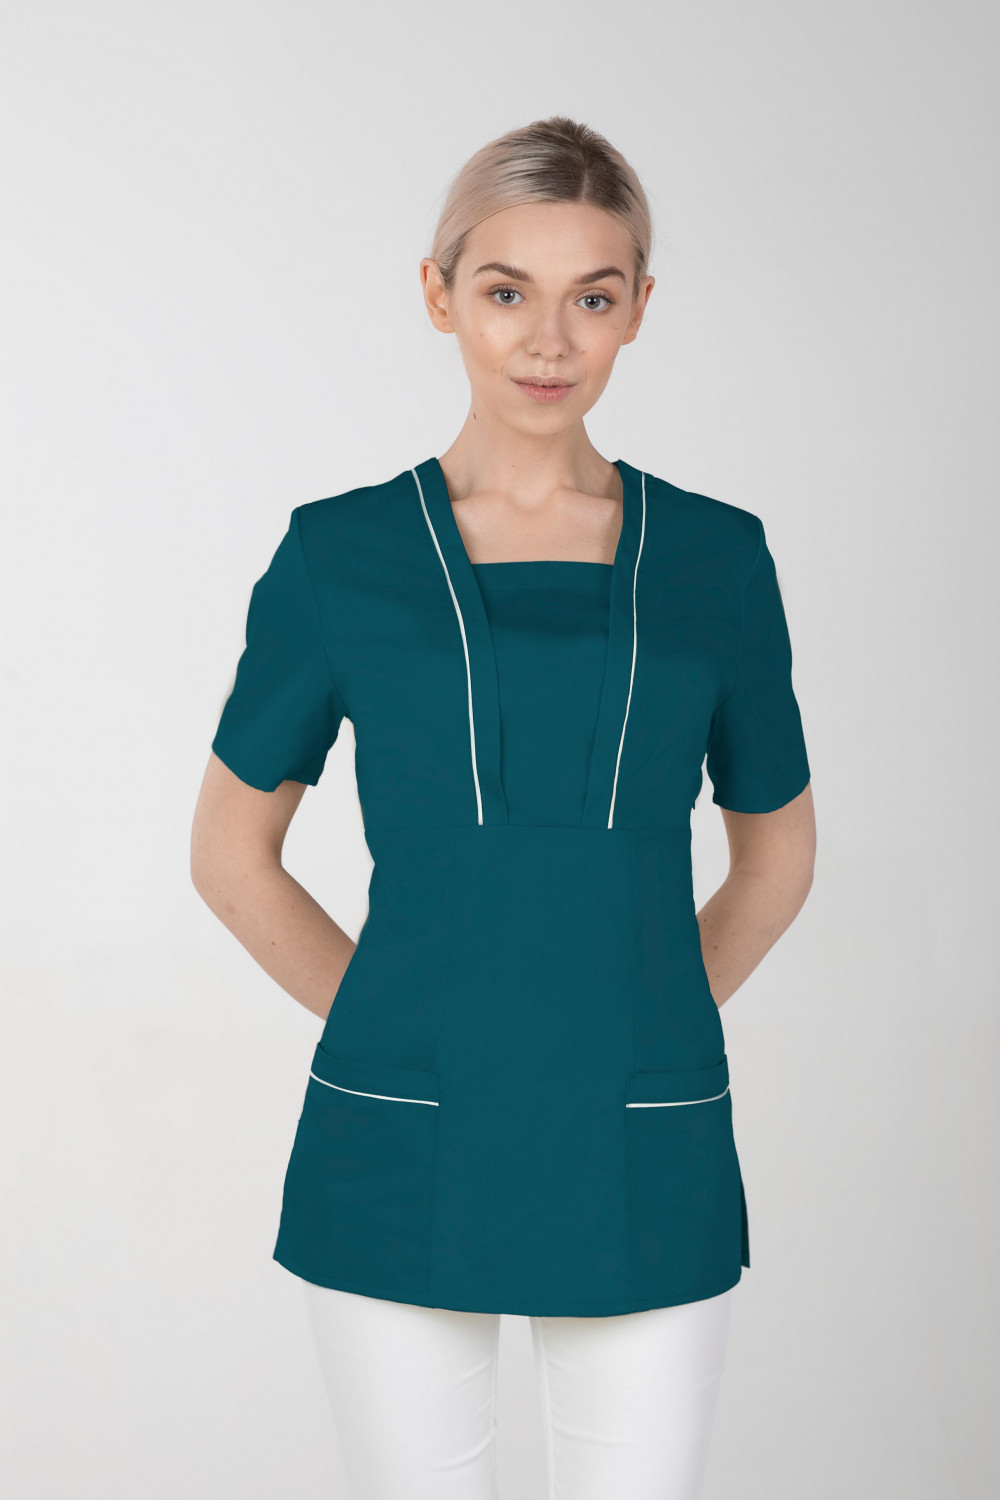 M-054X Elastyczna bluza damska medyczna kosmetyczna fartuch uniform kolor ciemna zieleń